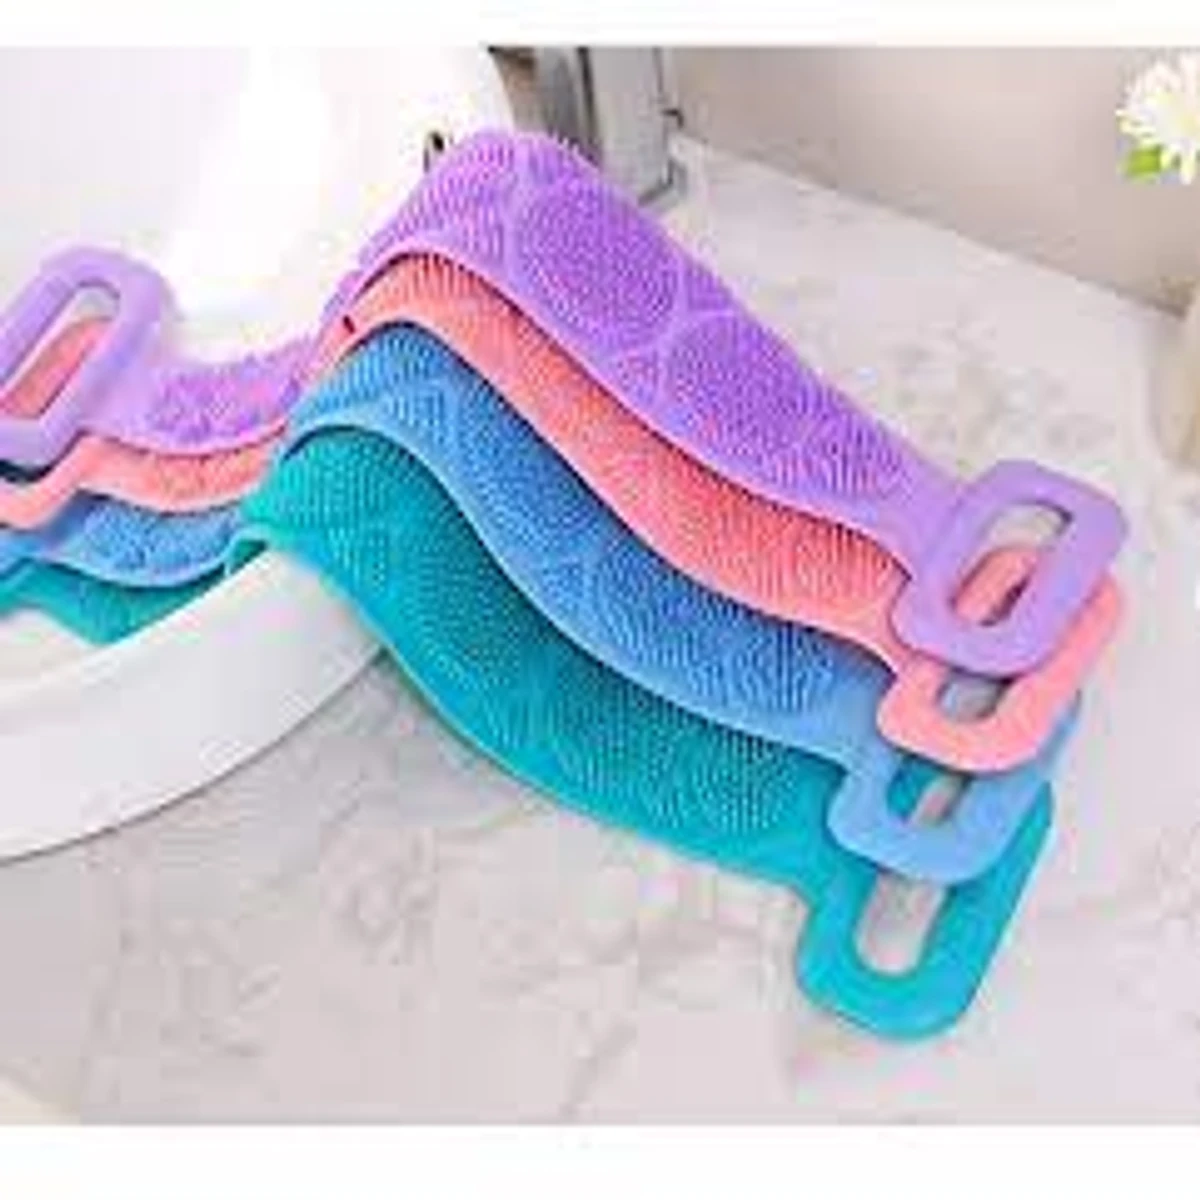 ম্যাজিক বডি ব্রাশ (Silica bath towel)